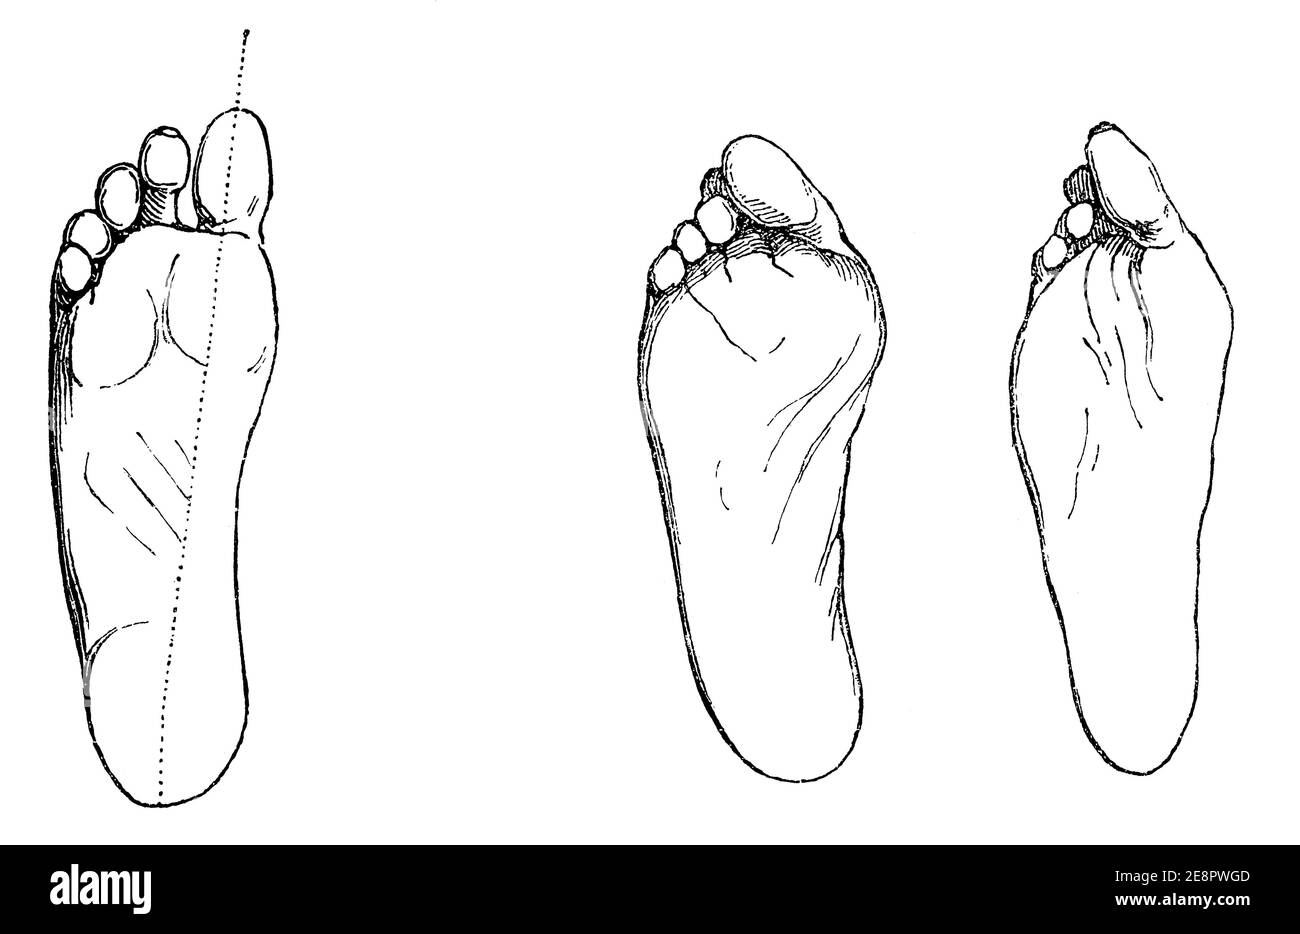 Pie sano (lixiviados) y enfermo (derechos). Paralizamiento del pie causado por el mal calzado. Ilustración del siglo 19. Alemania. Fondo blanco. Foto de stock